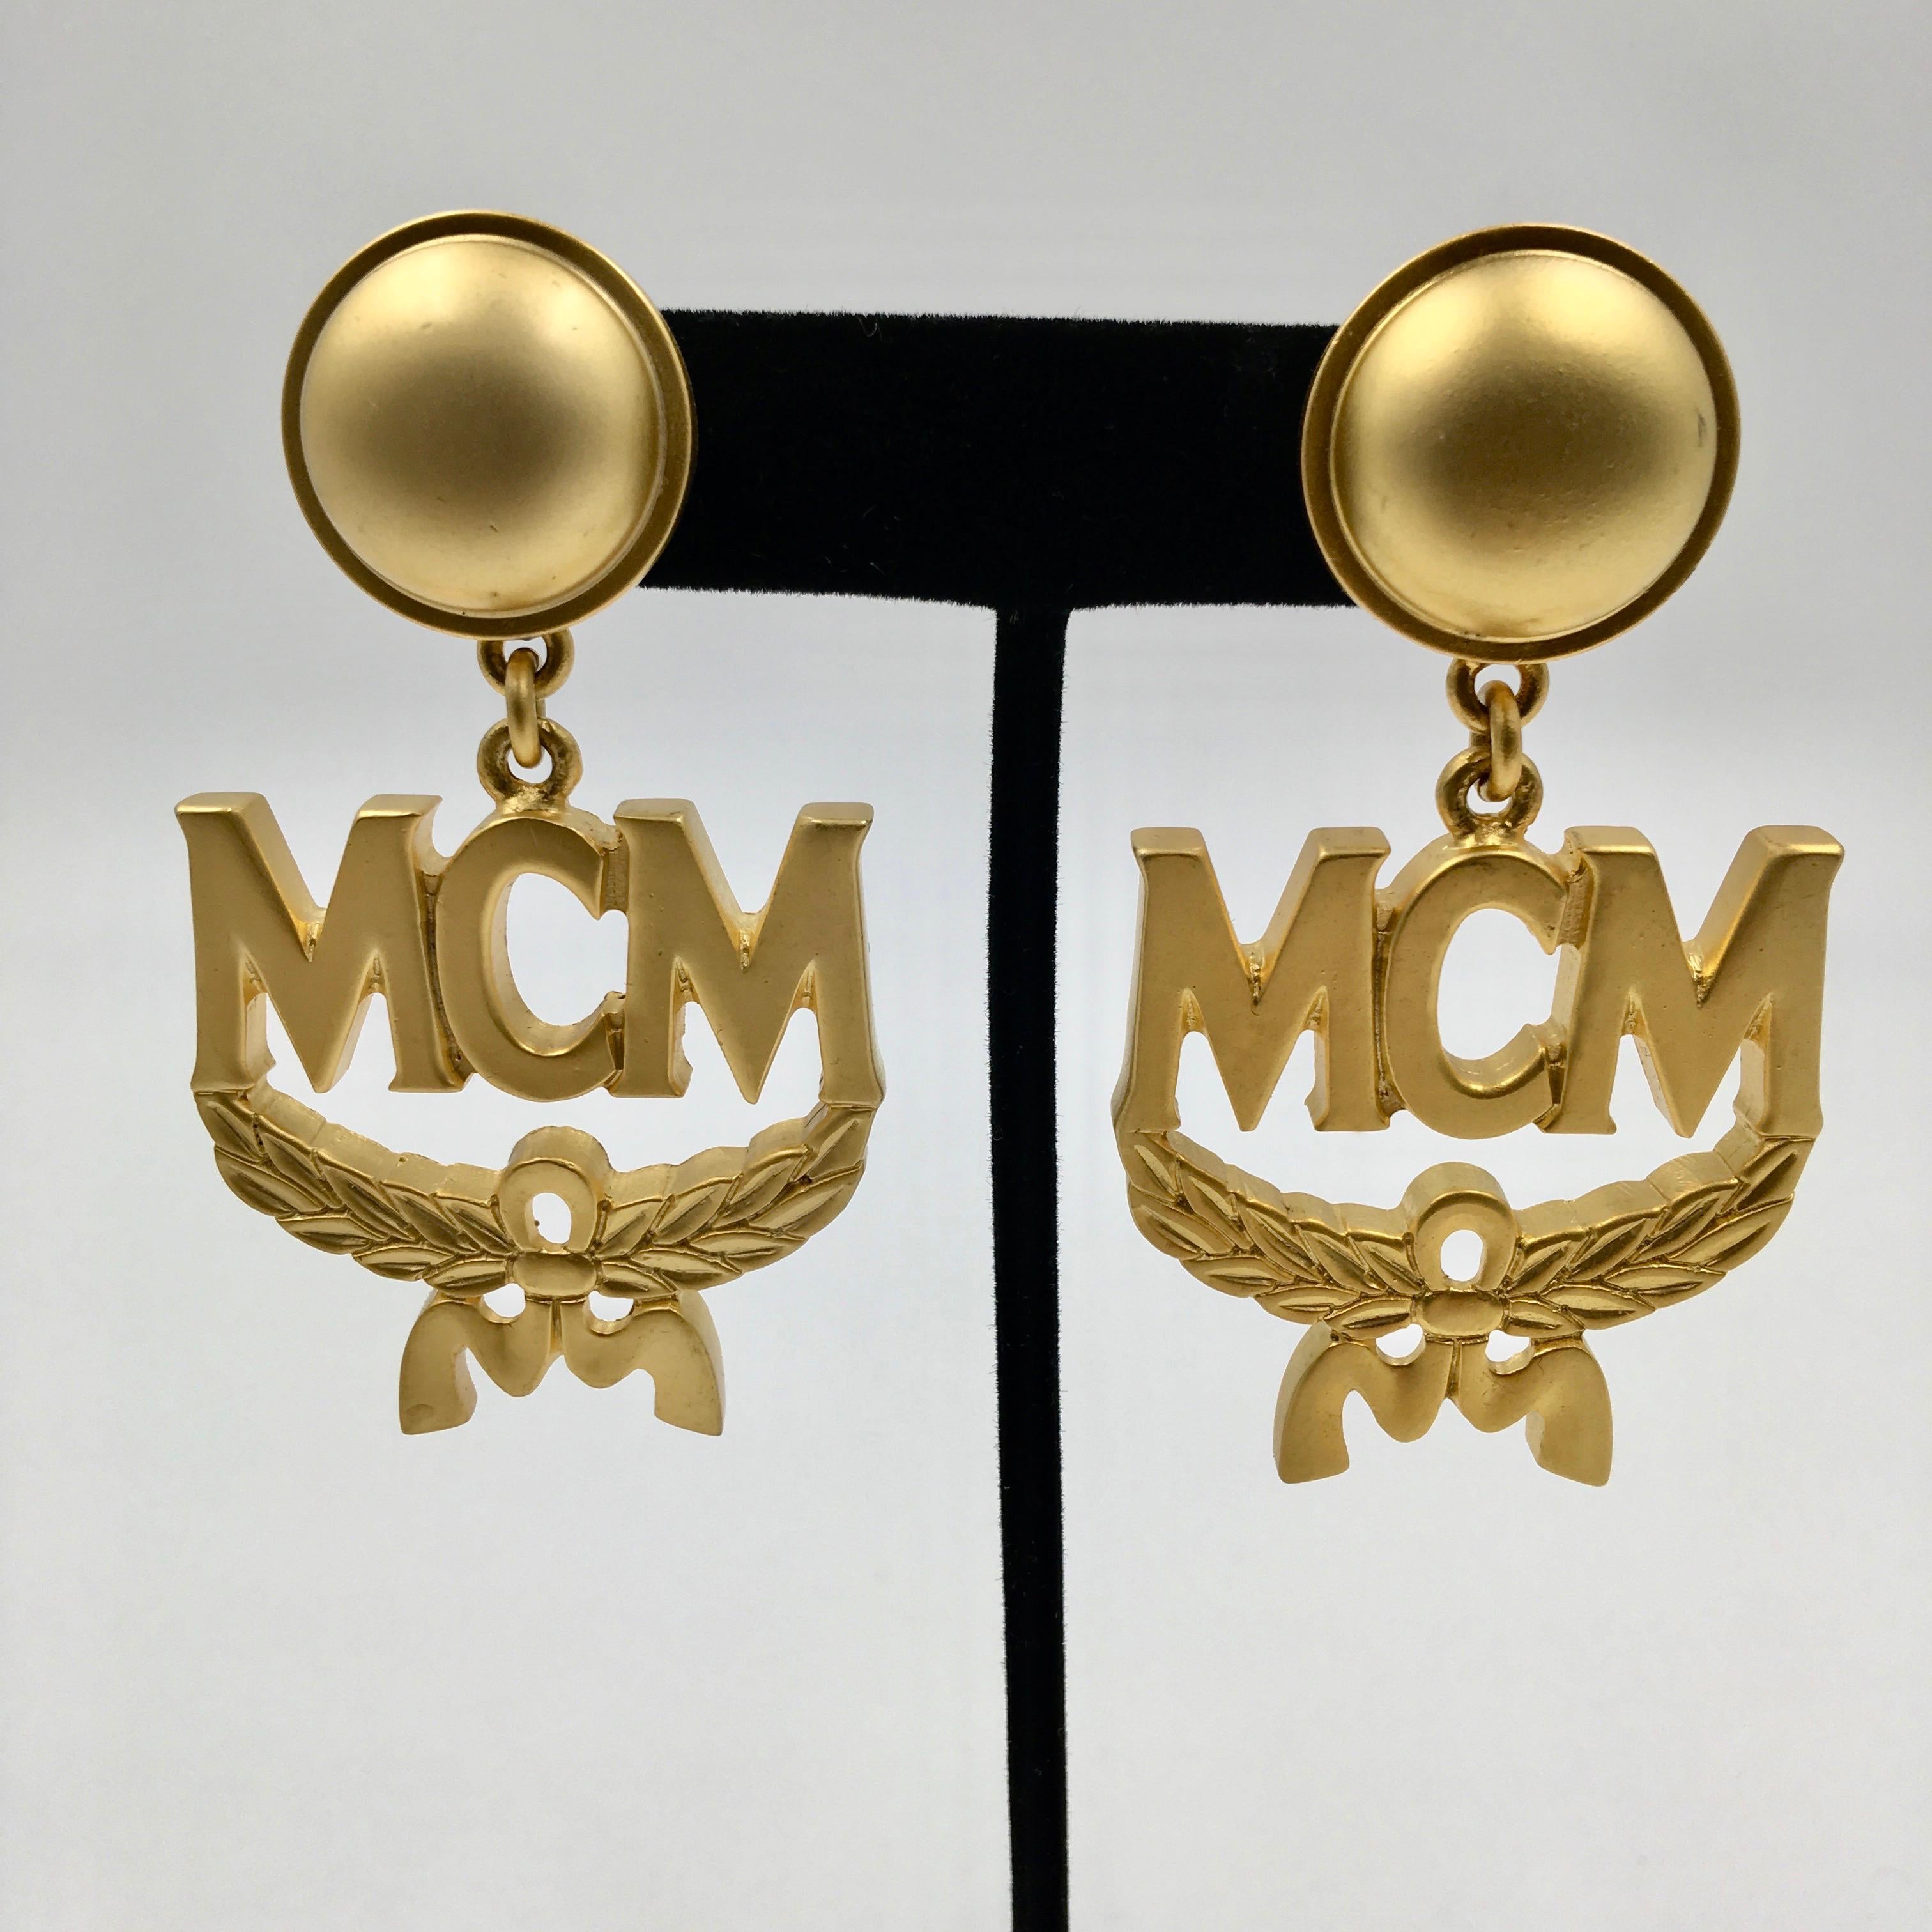 Boucles d'oreilles à clip en or mat avec logo en forme de couronne MCM. Étiquettes originales attachées. Fabriquées en Italie. 
En excellent état vintage.

Les mesures sont les suivantes :

Largeur- 1 1/2